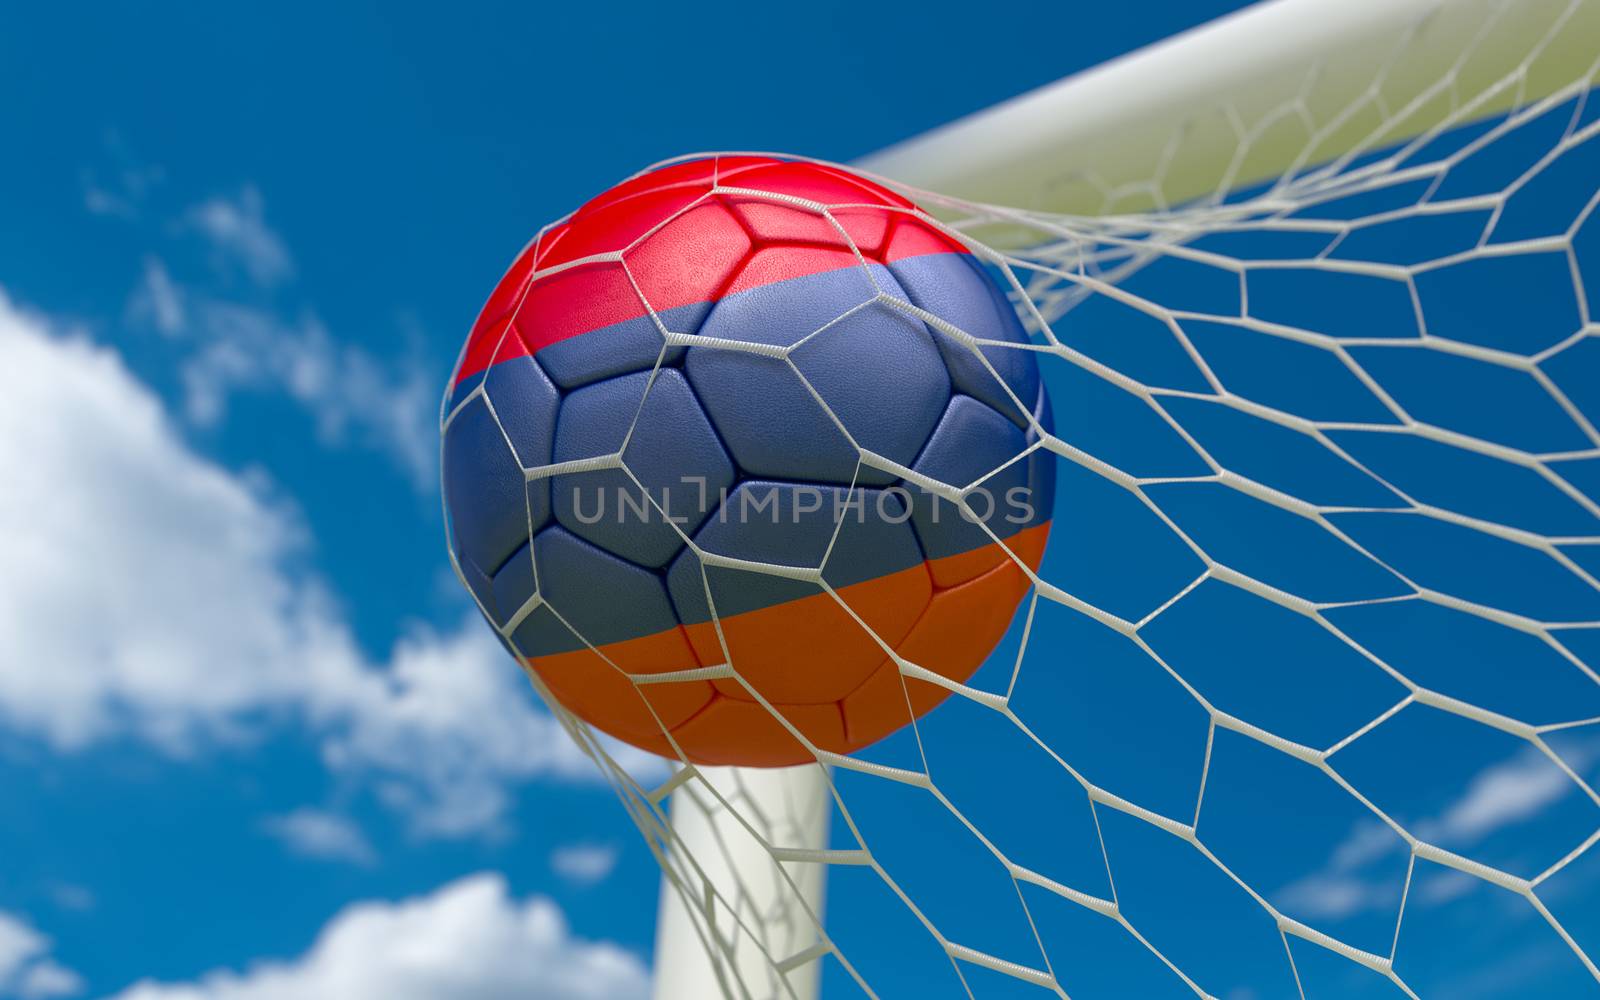 Armenia flag and soccer ball in goal net by Barbraford